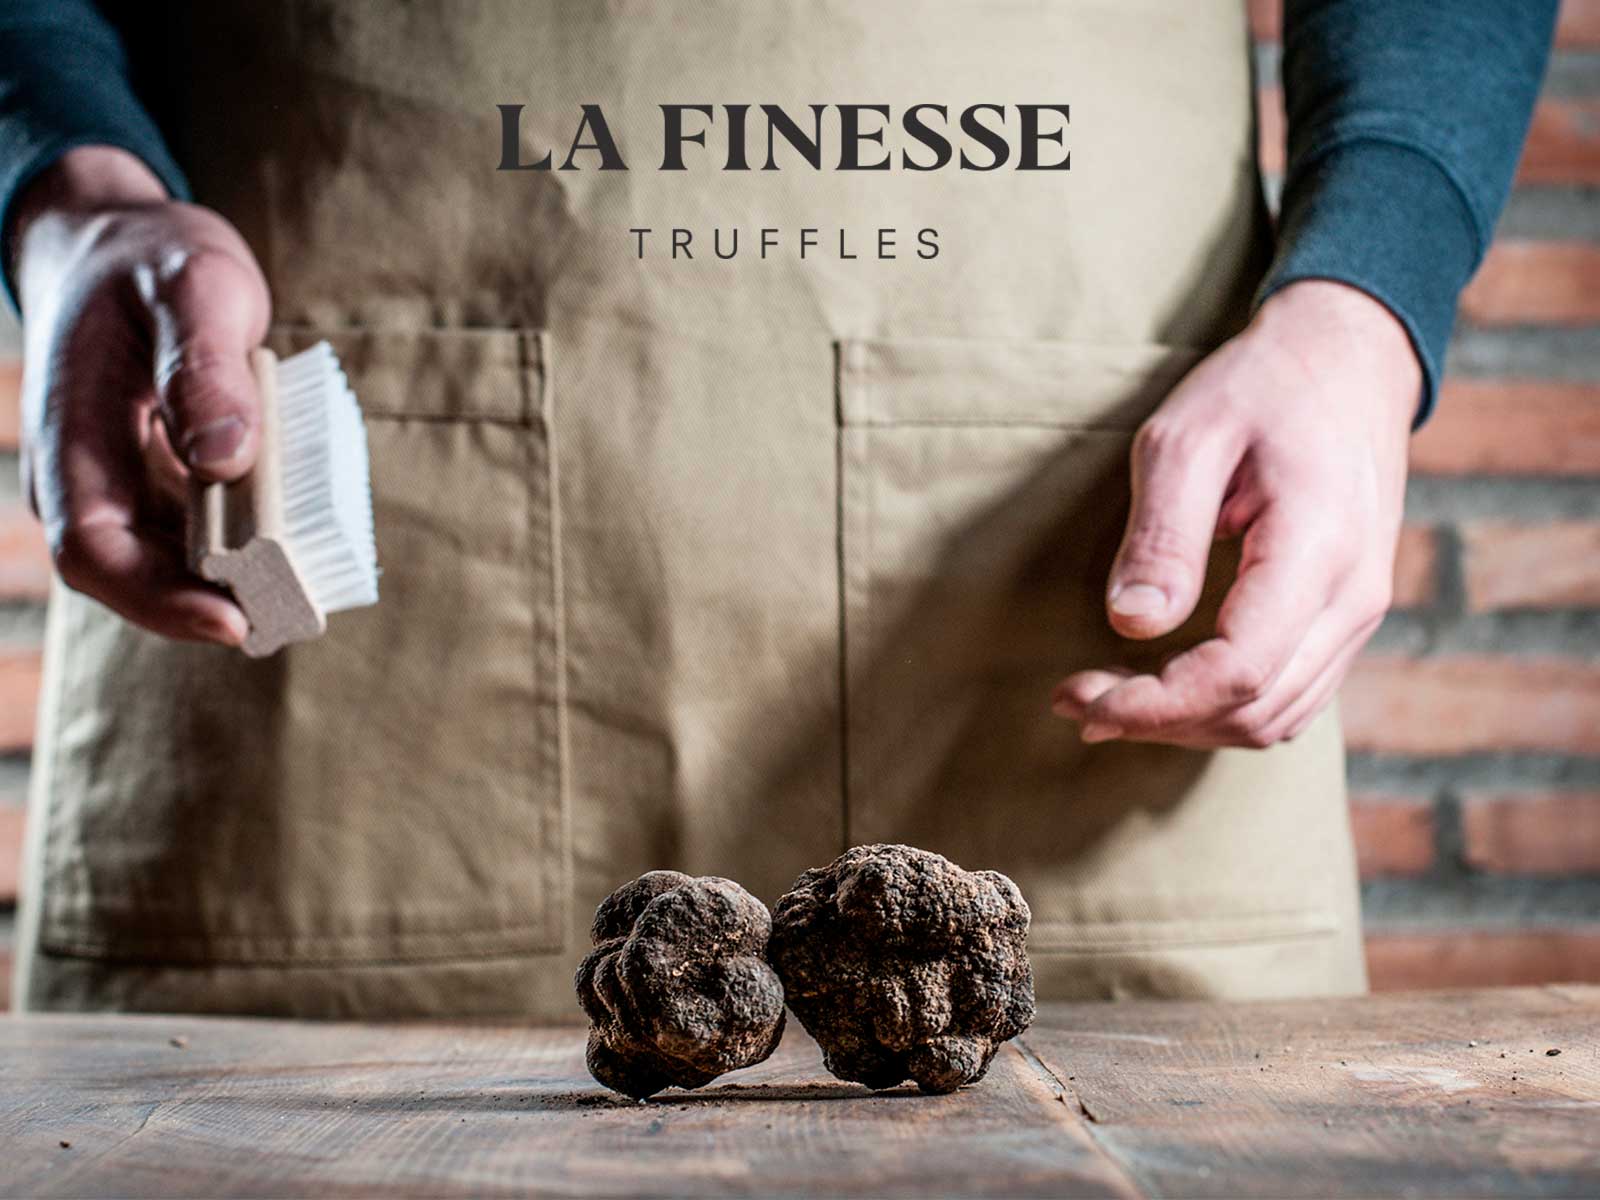 La Finesse Truffles